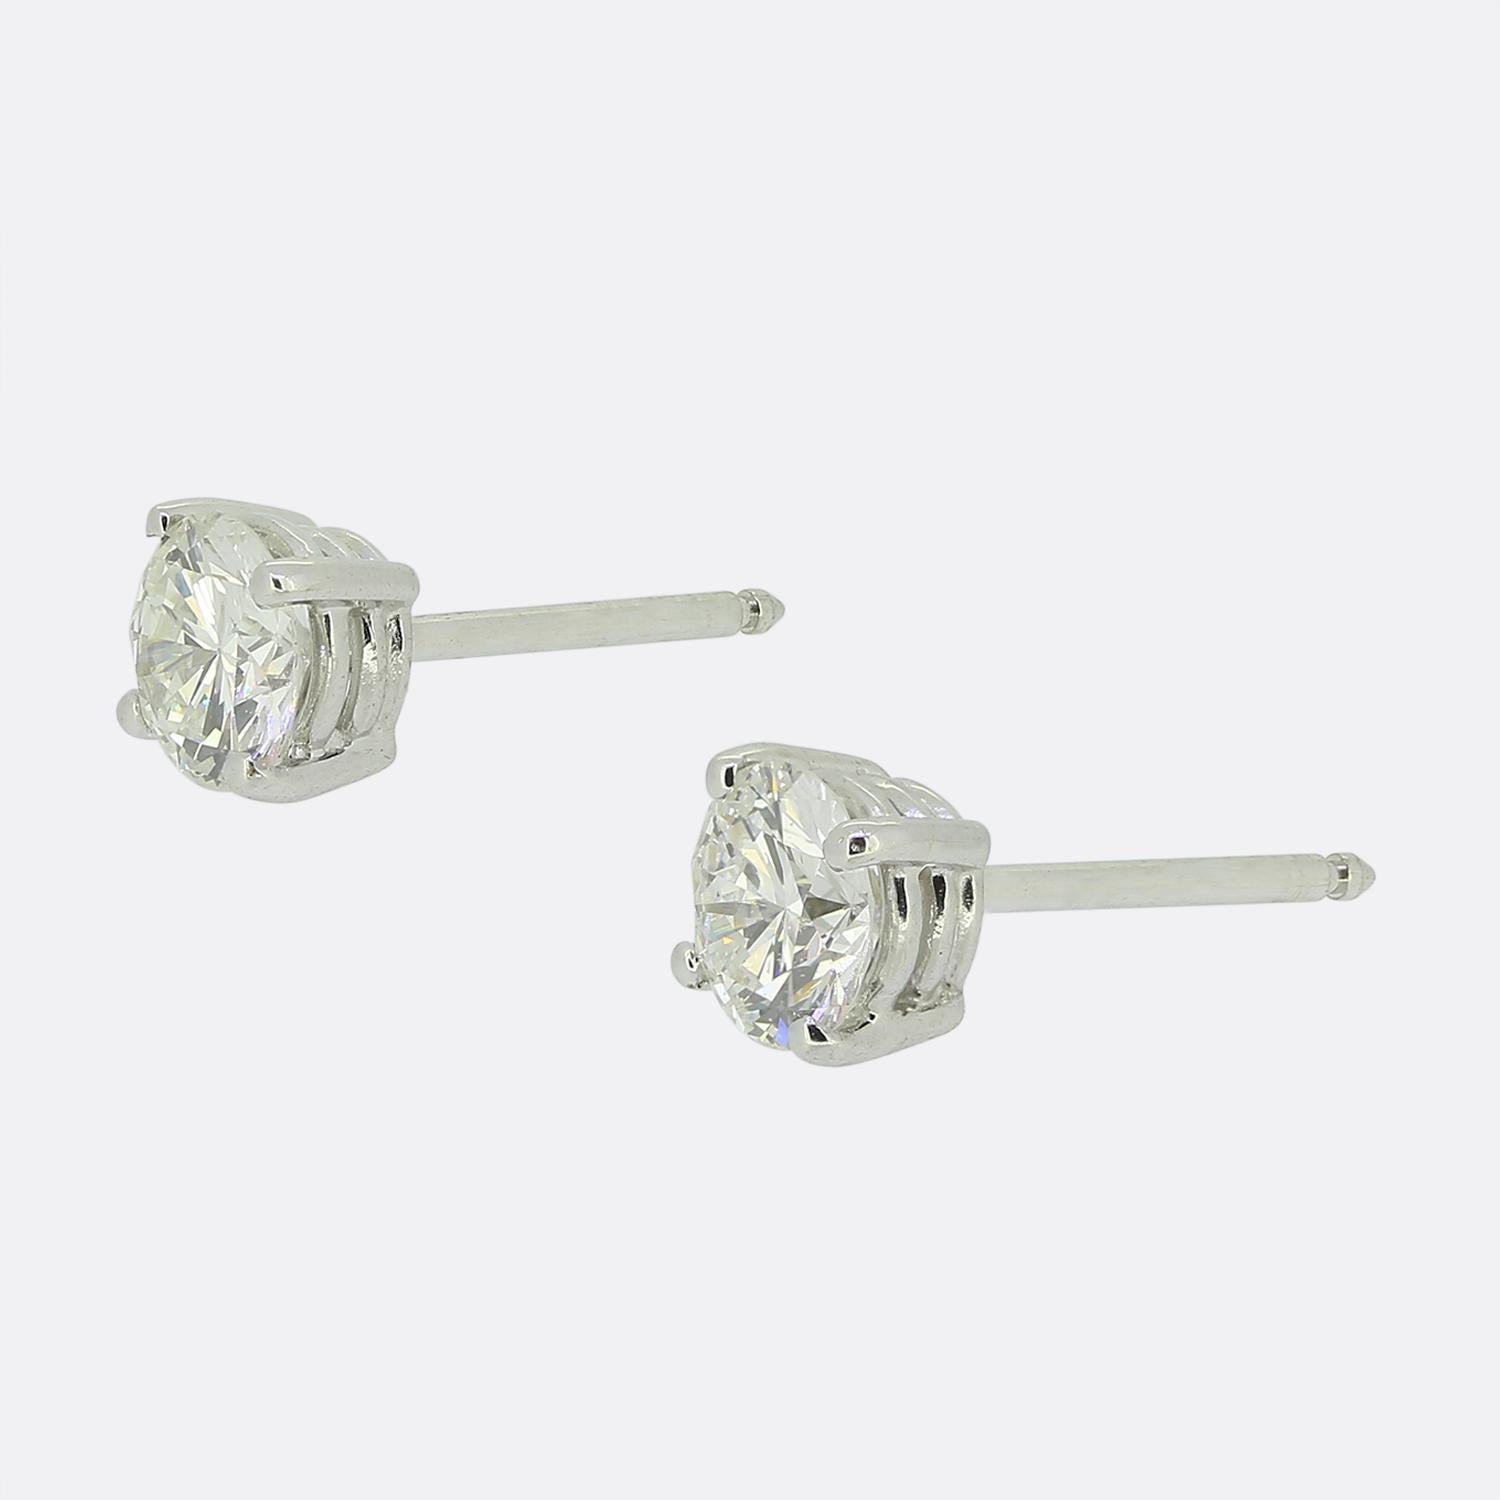 Hier haben wir ein klassisch gestyltes Paar Diamant-Ohrstecker. Jedes Stück besteht aus einer 18-karätigen Weißgoldfassung mit vier Krallen, in der ein einzelner runder Diamant im Brillantschliff von 0,50 Karat sitzt. Beide sind in Bezug auf Farbe,